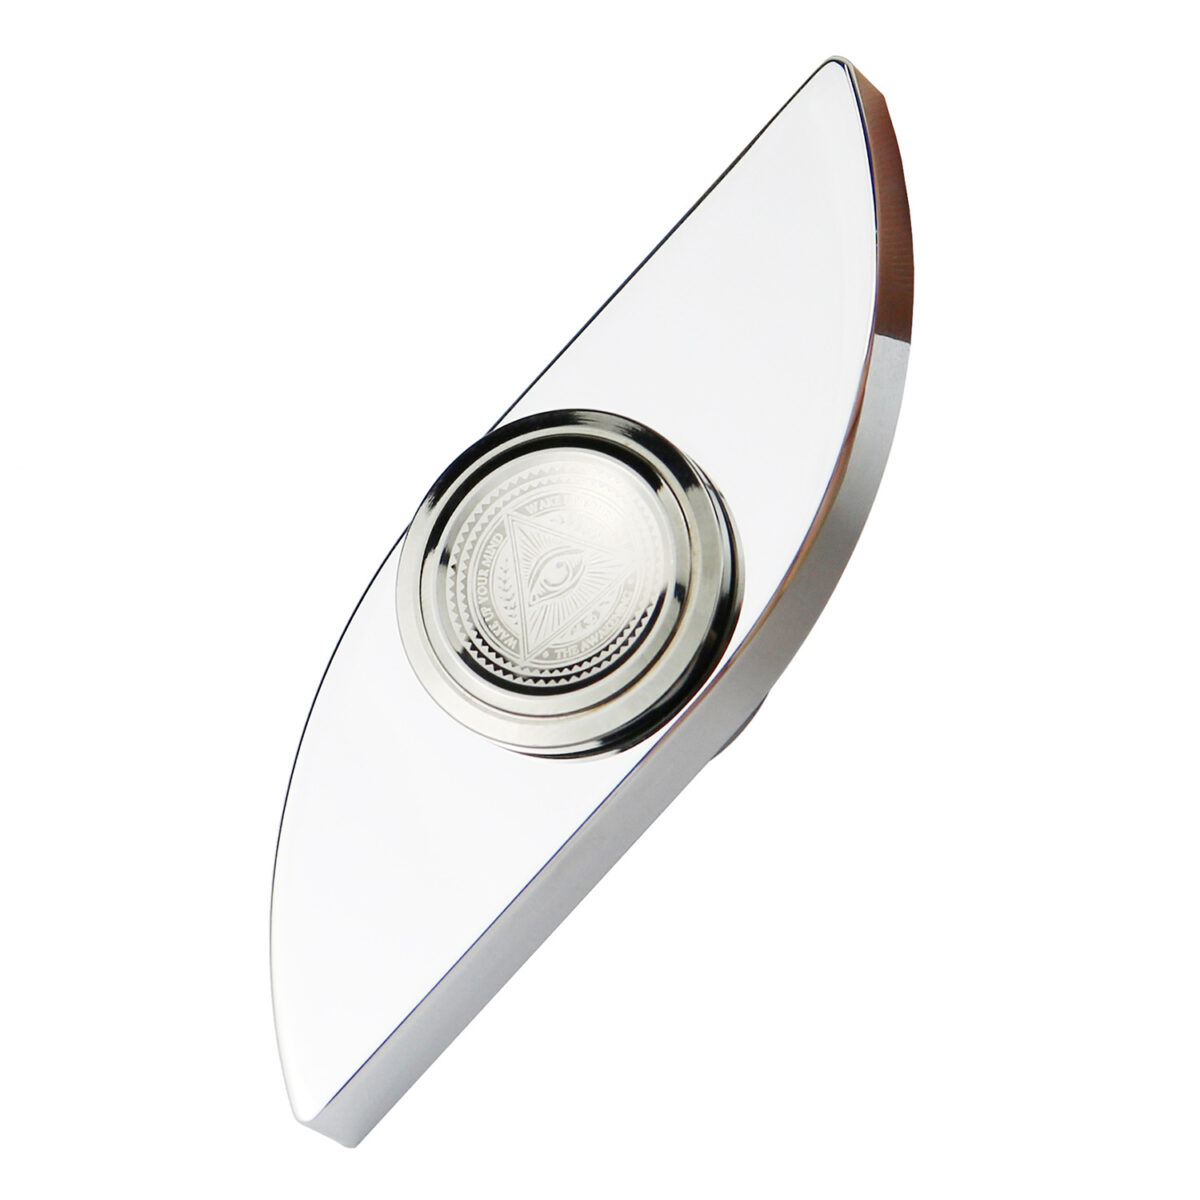 Eye of Power Premium Stainless Steel Fidget Spinner 6